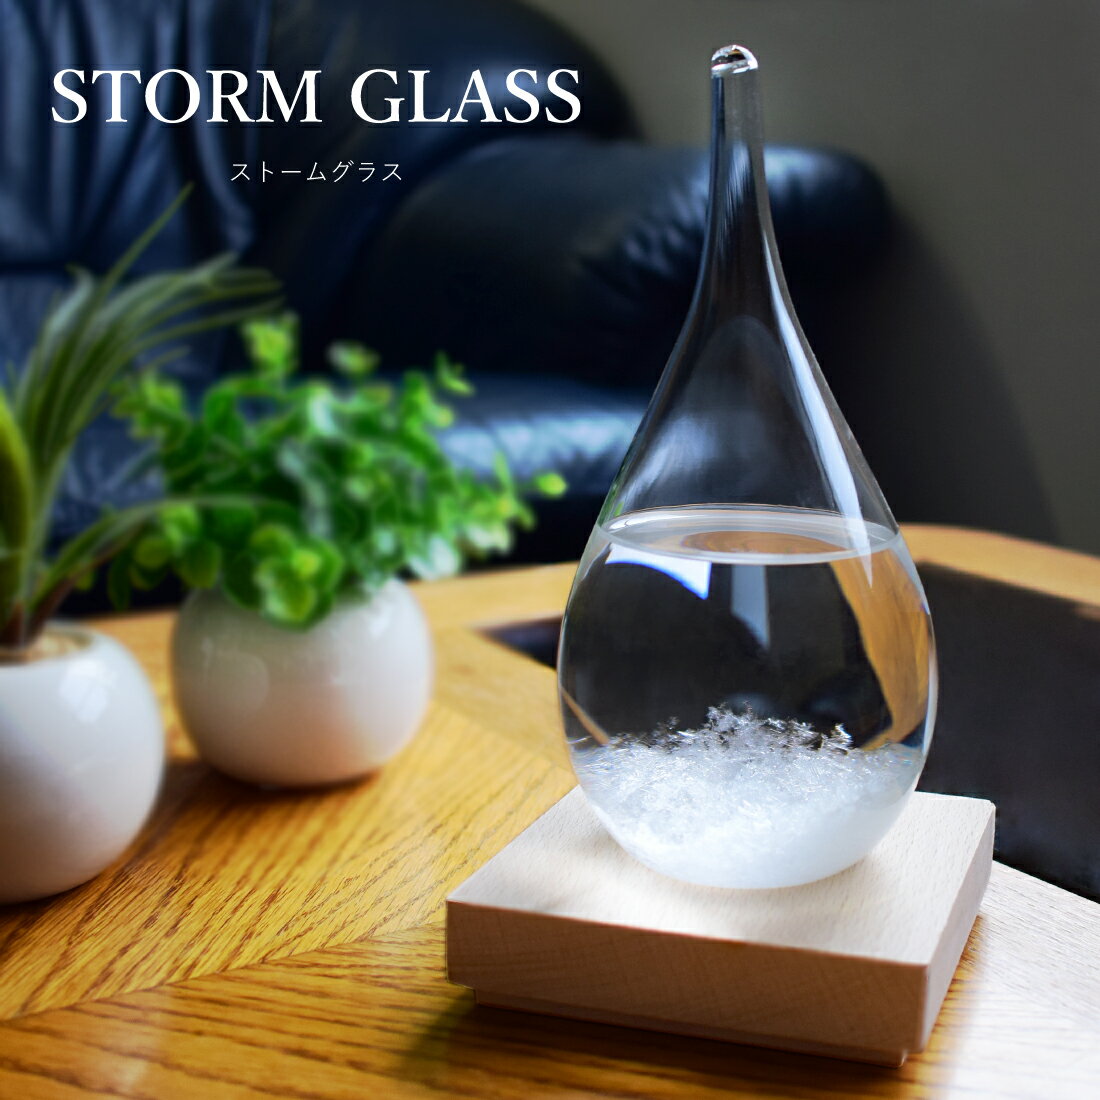 ストームグラス ガラス 天気予報ボトル ストーム瓶 Large 気象予報器 結晶観察器 しずく型 水滴状 インテリア 小物 …